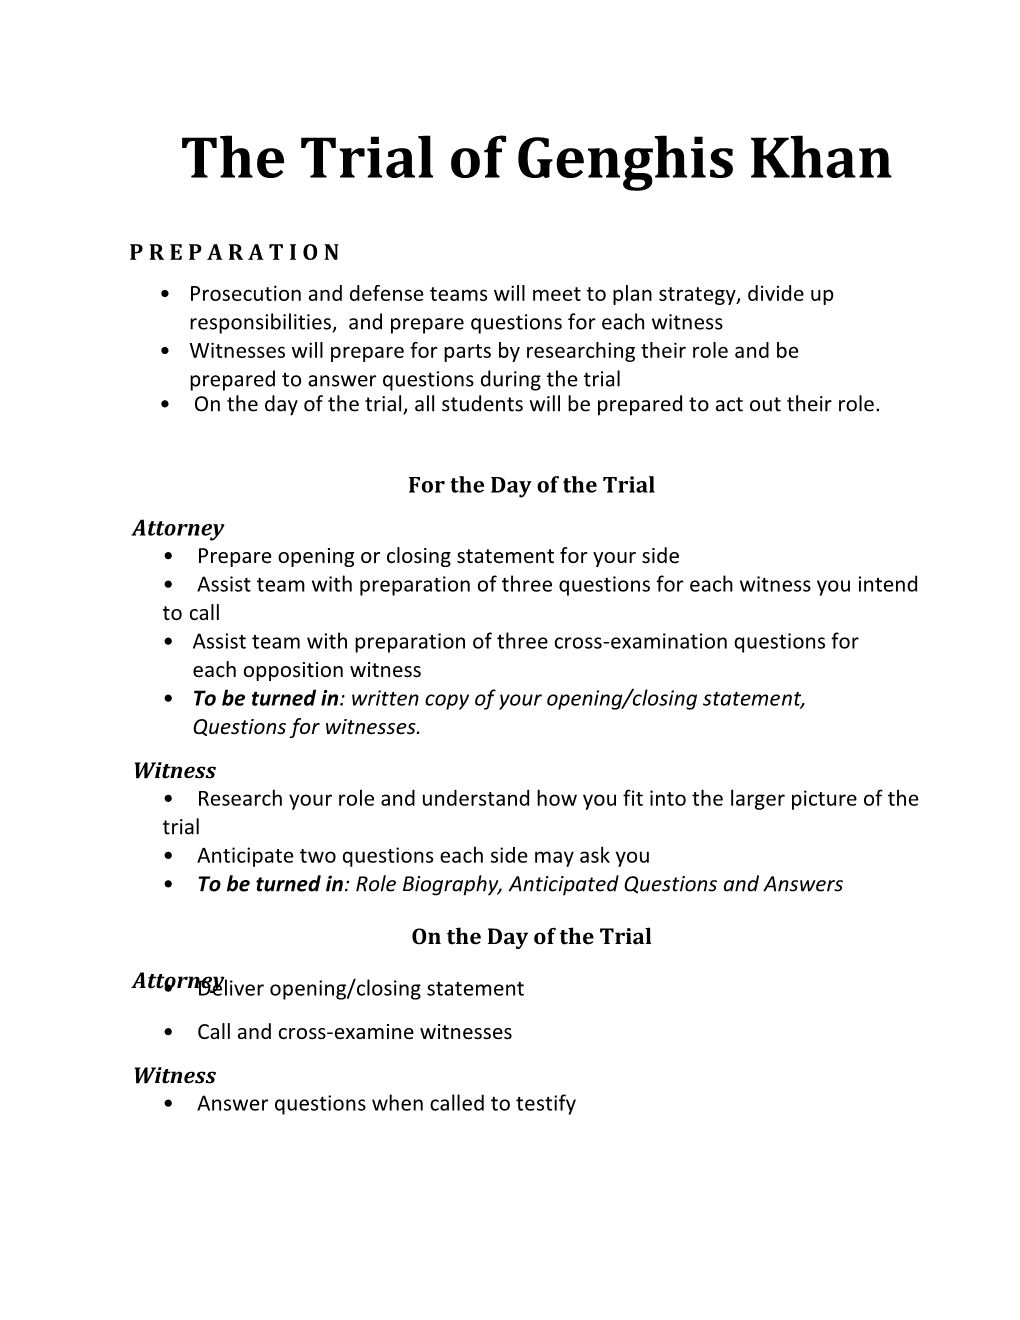 The Trial of Genghis Khan